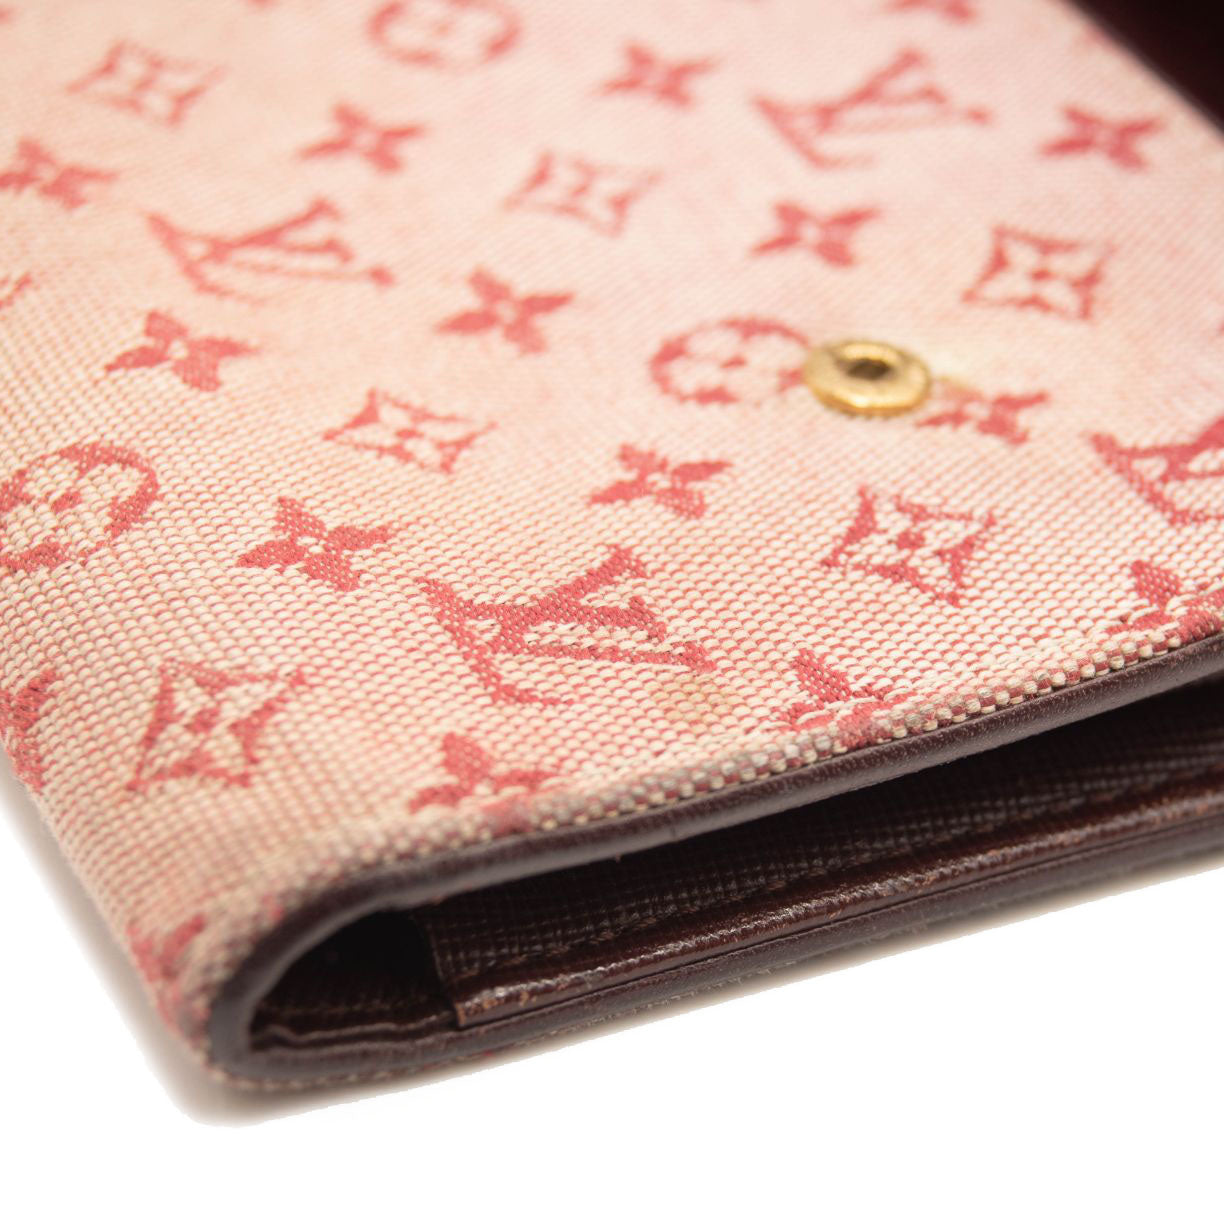 monogram pink louis vuitton wallet